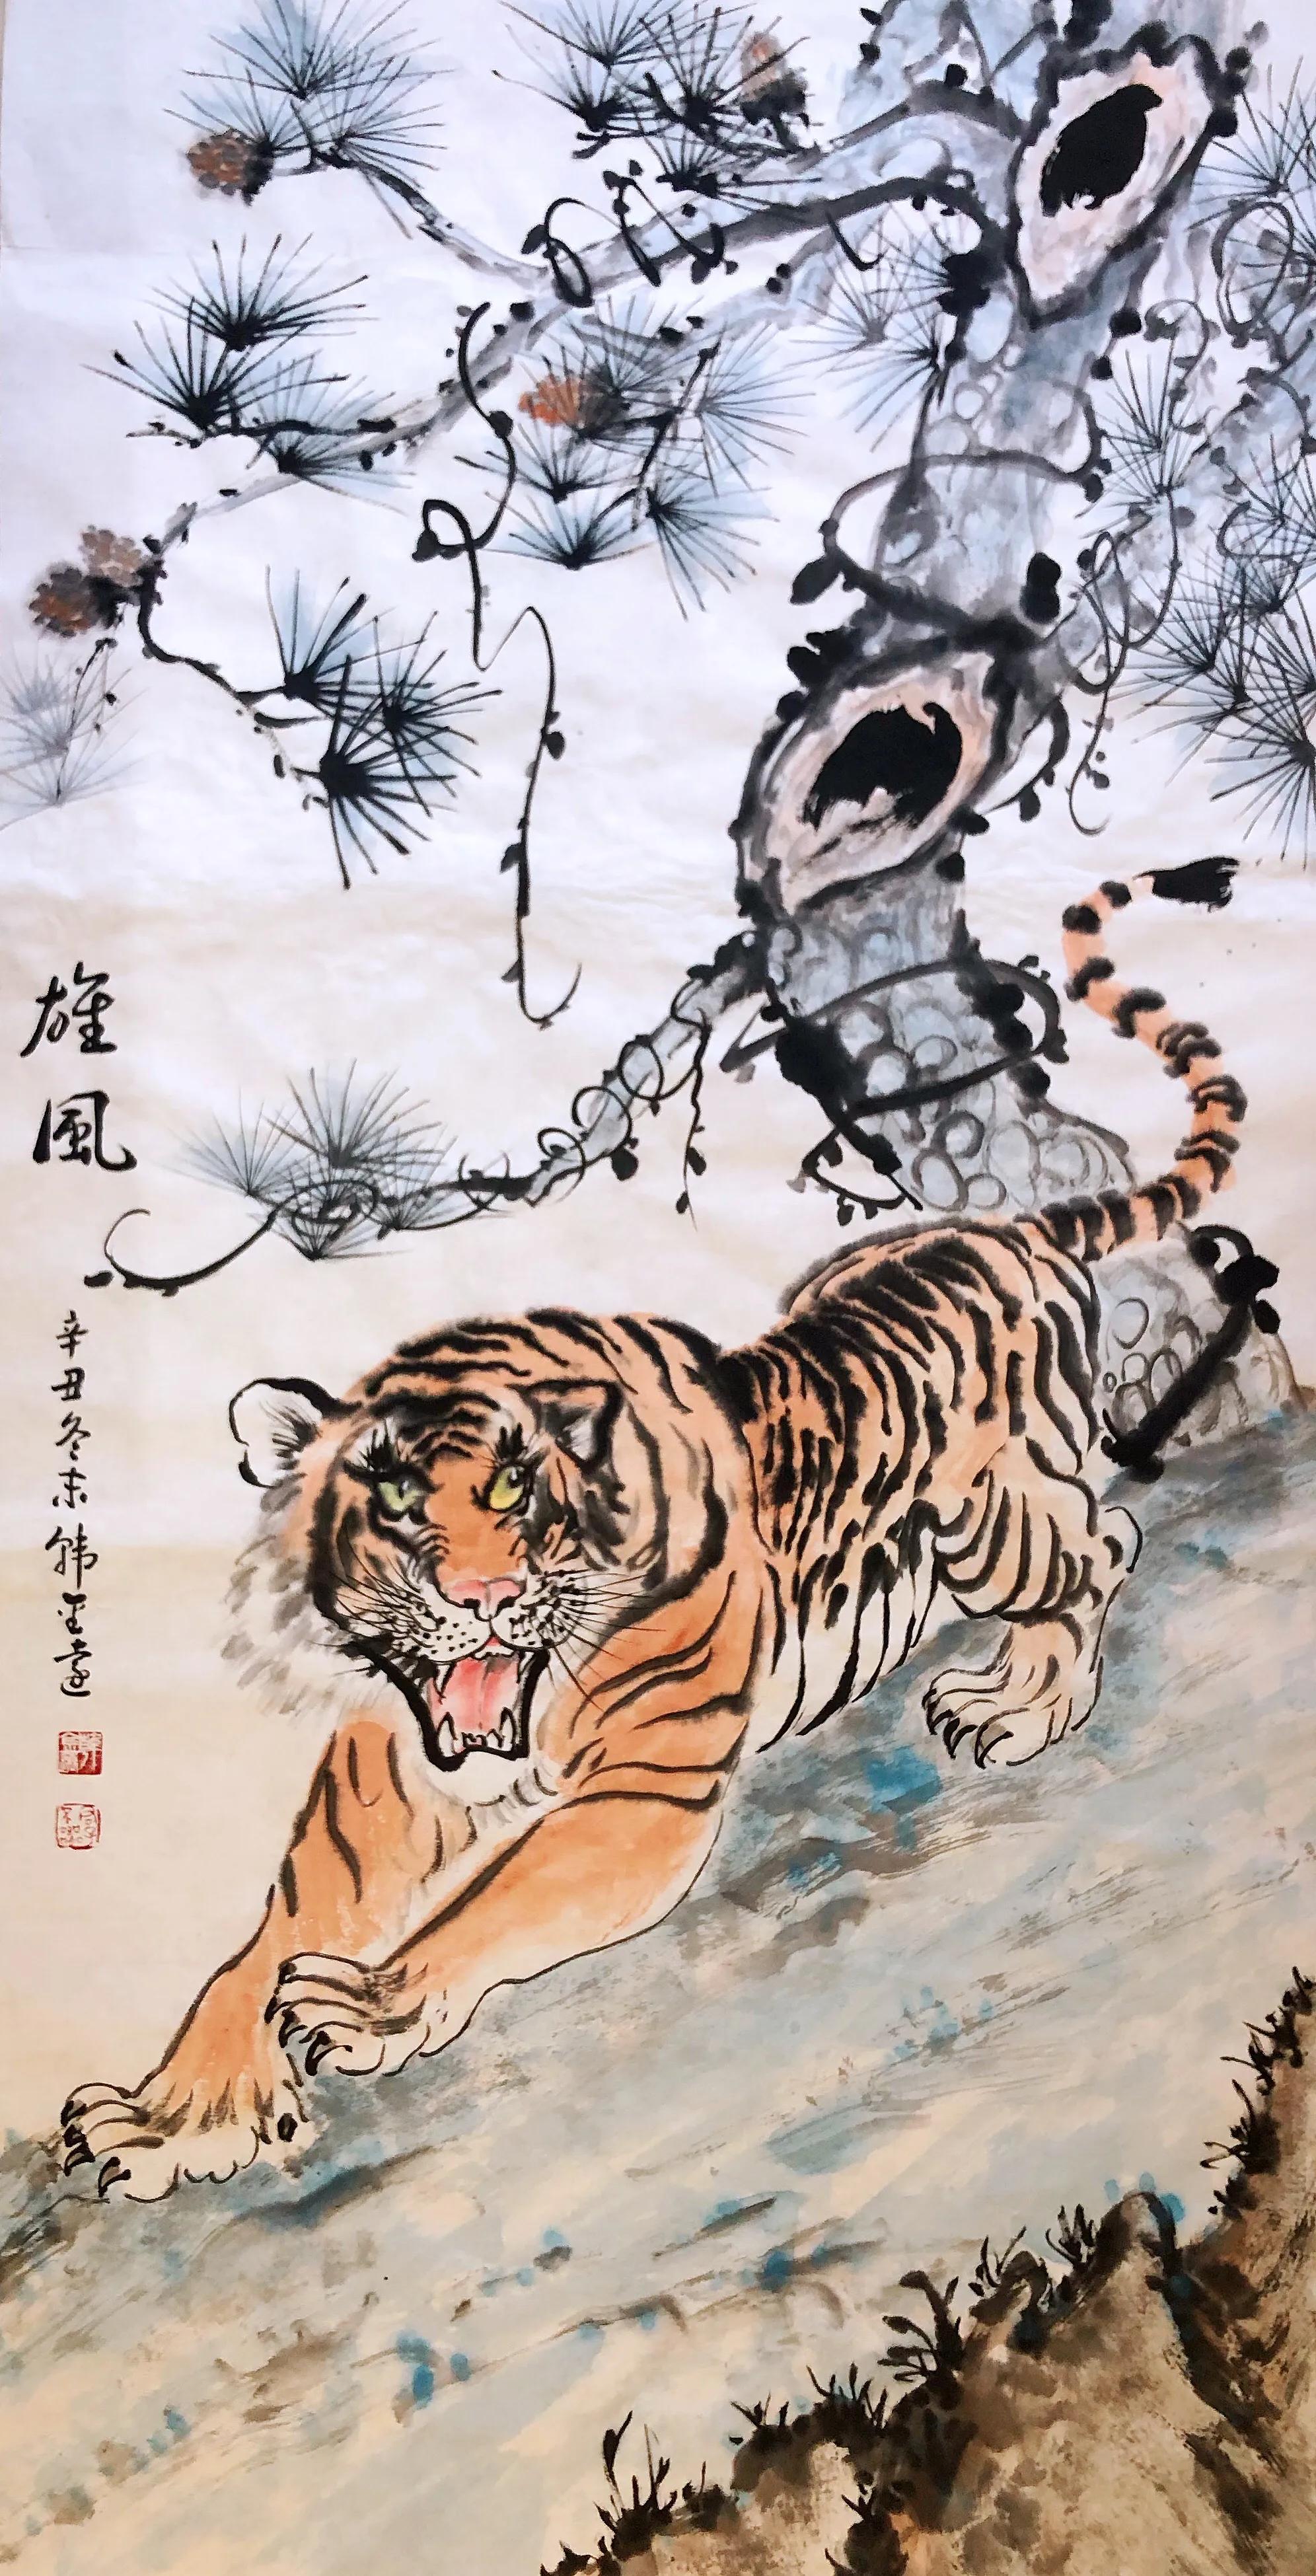 韩金远画12虎迎春贺岁2022年是中国传统的十二生肖文化中的虎年